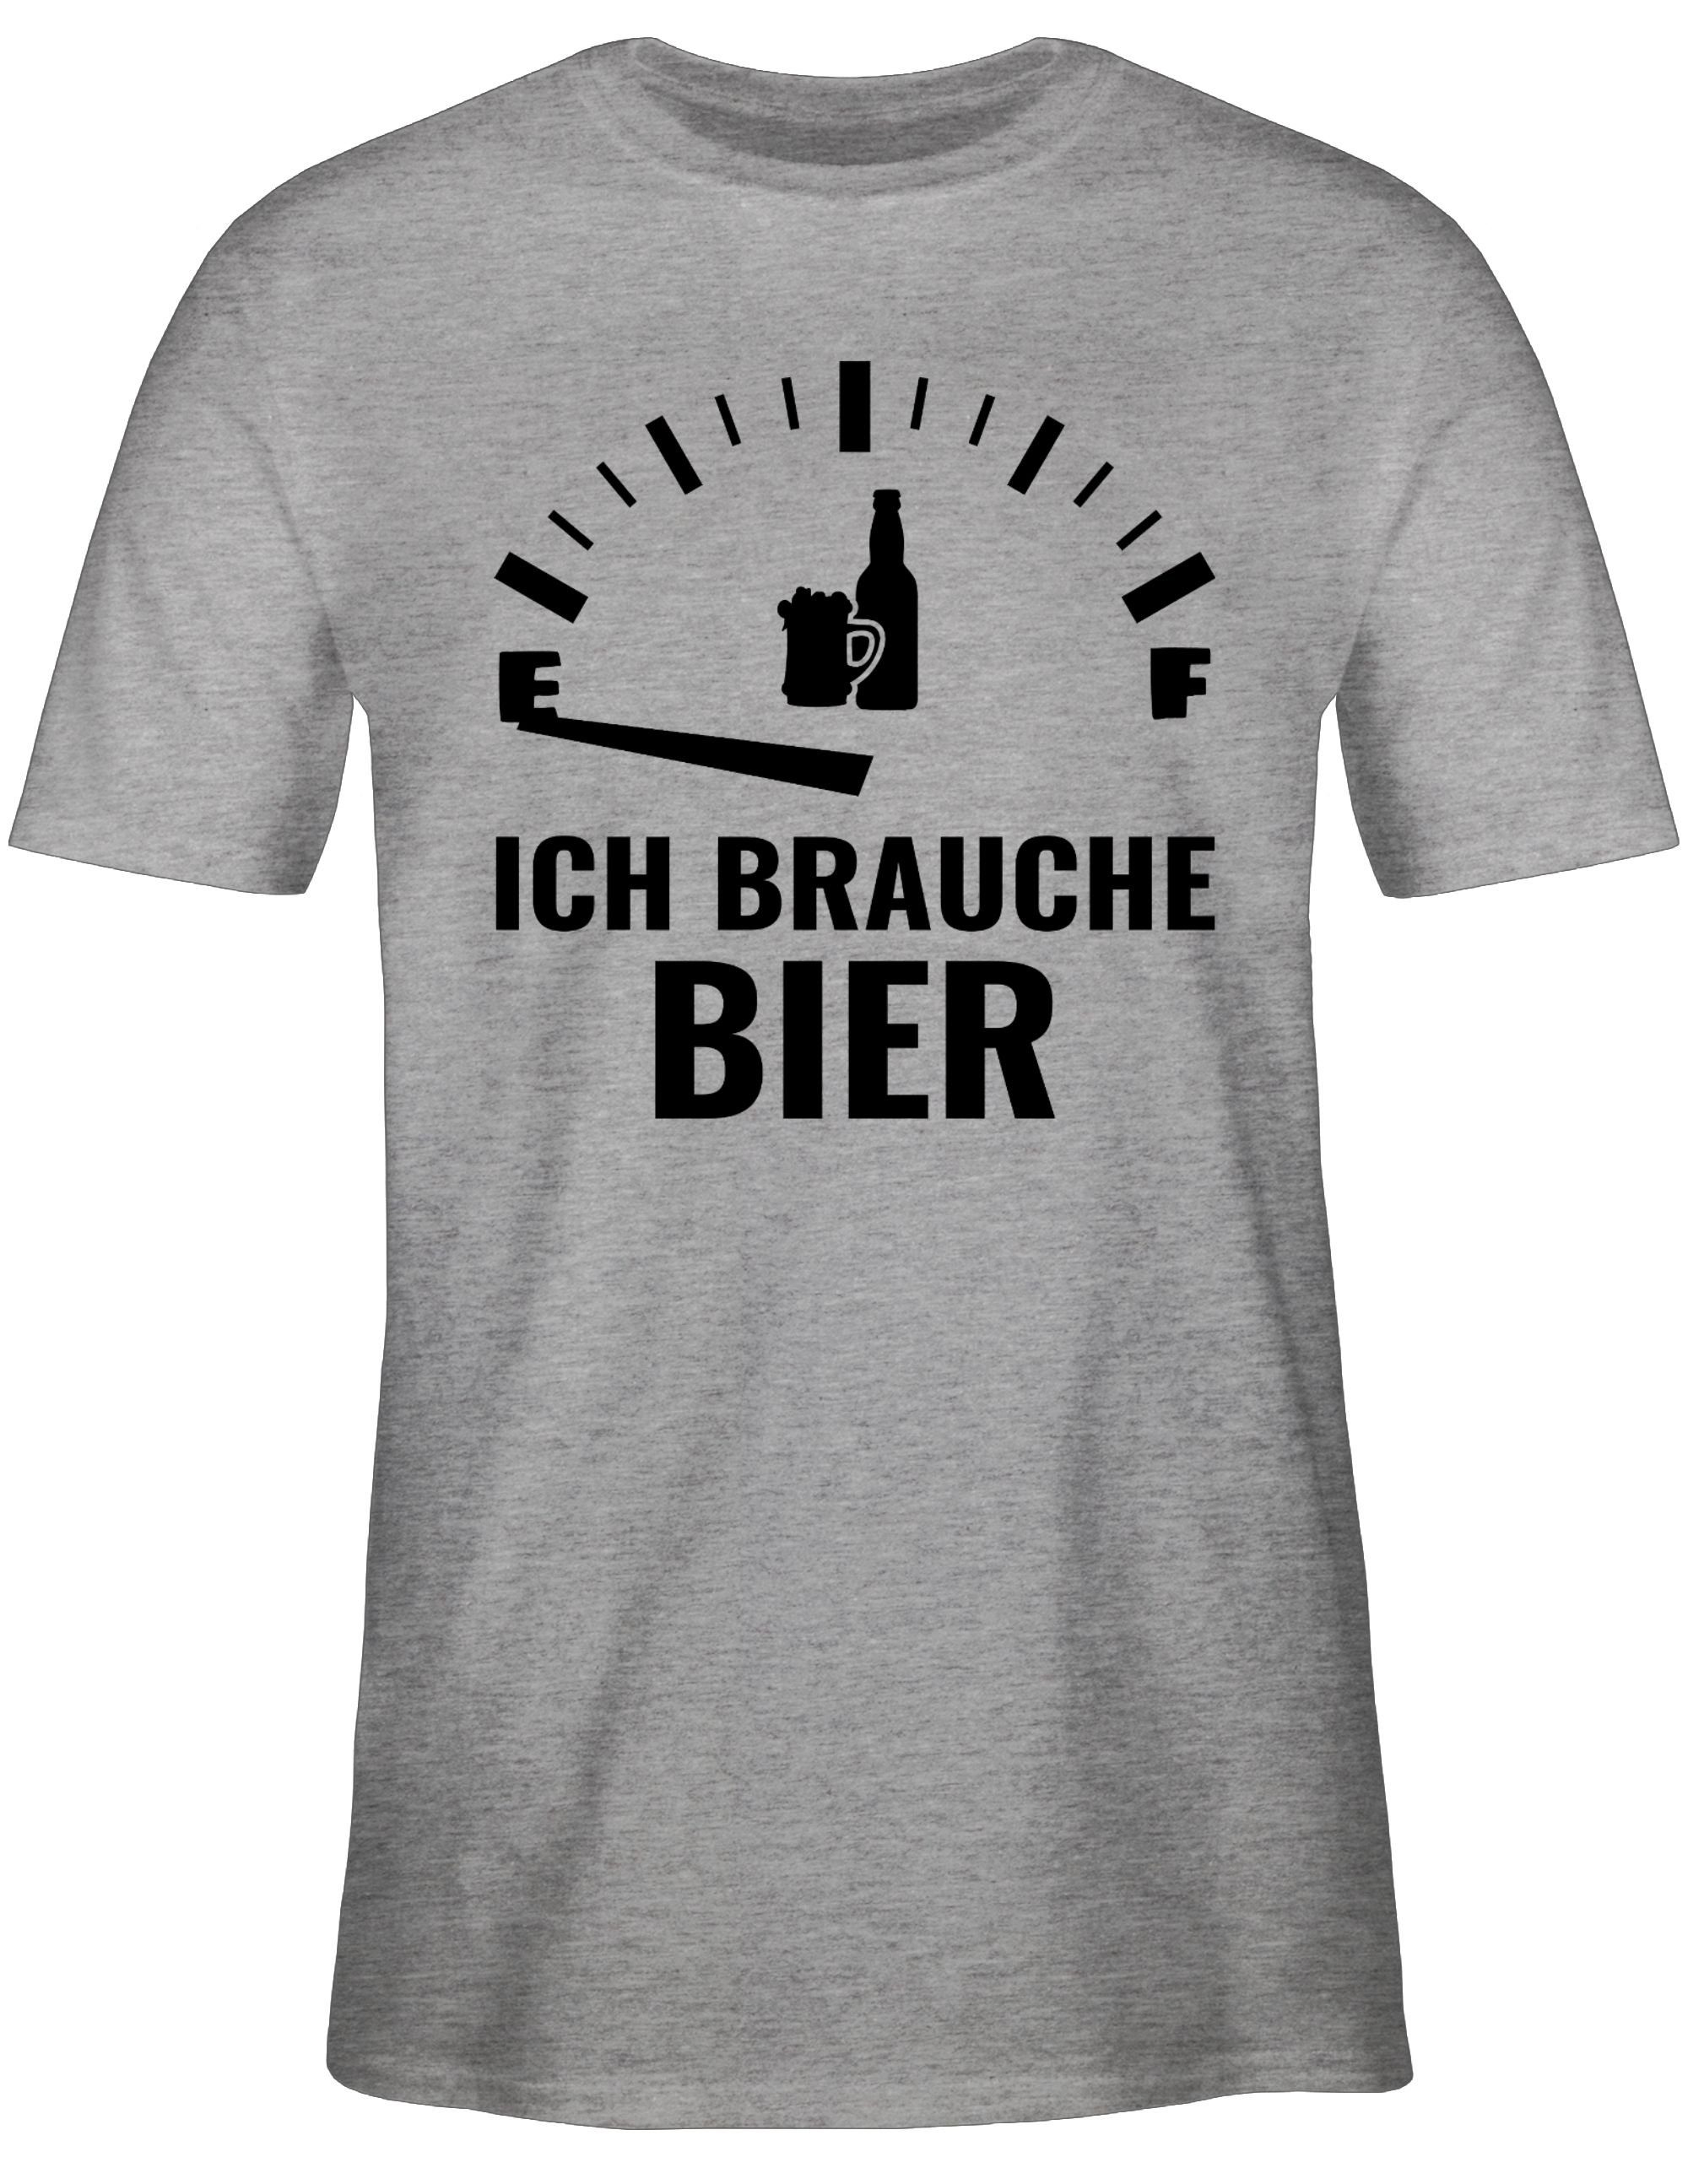 Sprüche Spruch schwarz T-Shirt brauche Grau Shirtracer 3 mit meliert - Ich Statement Bier